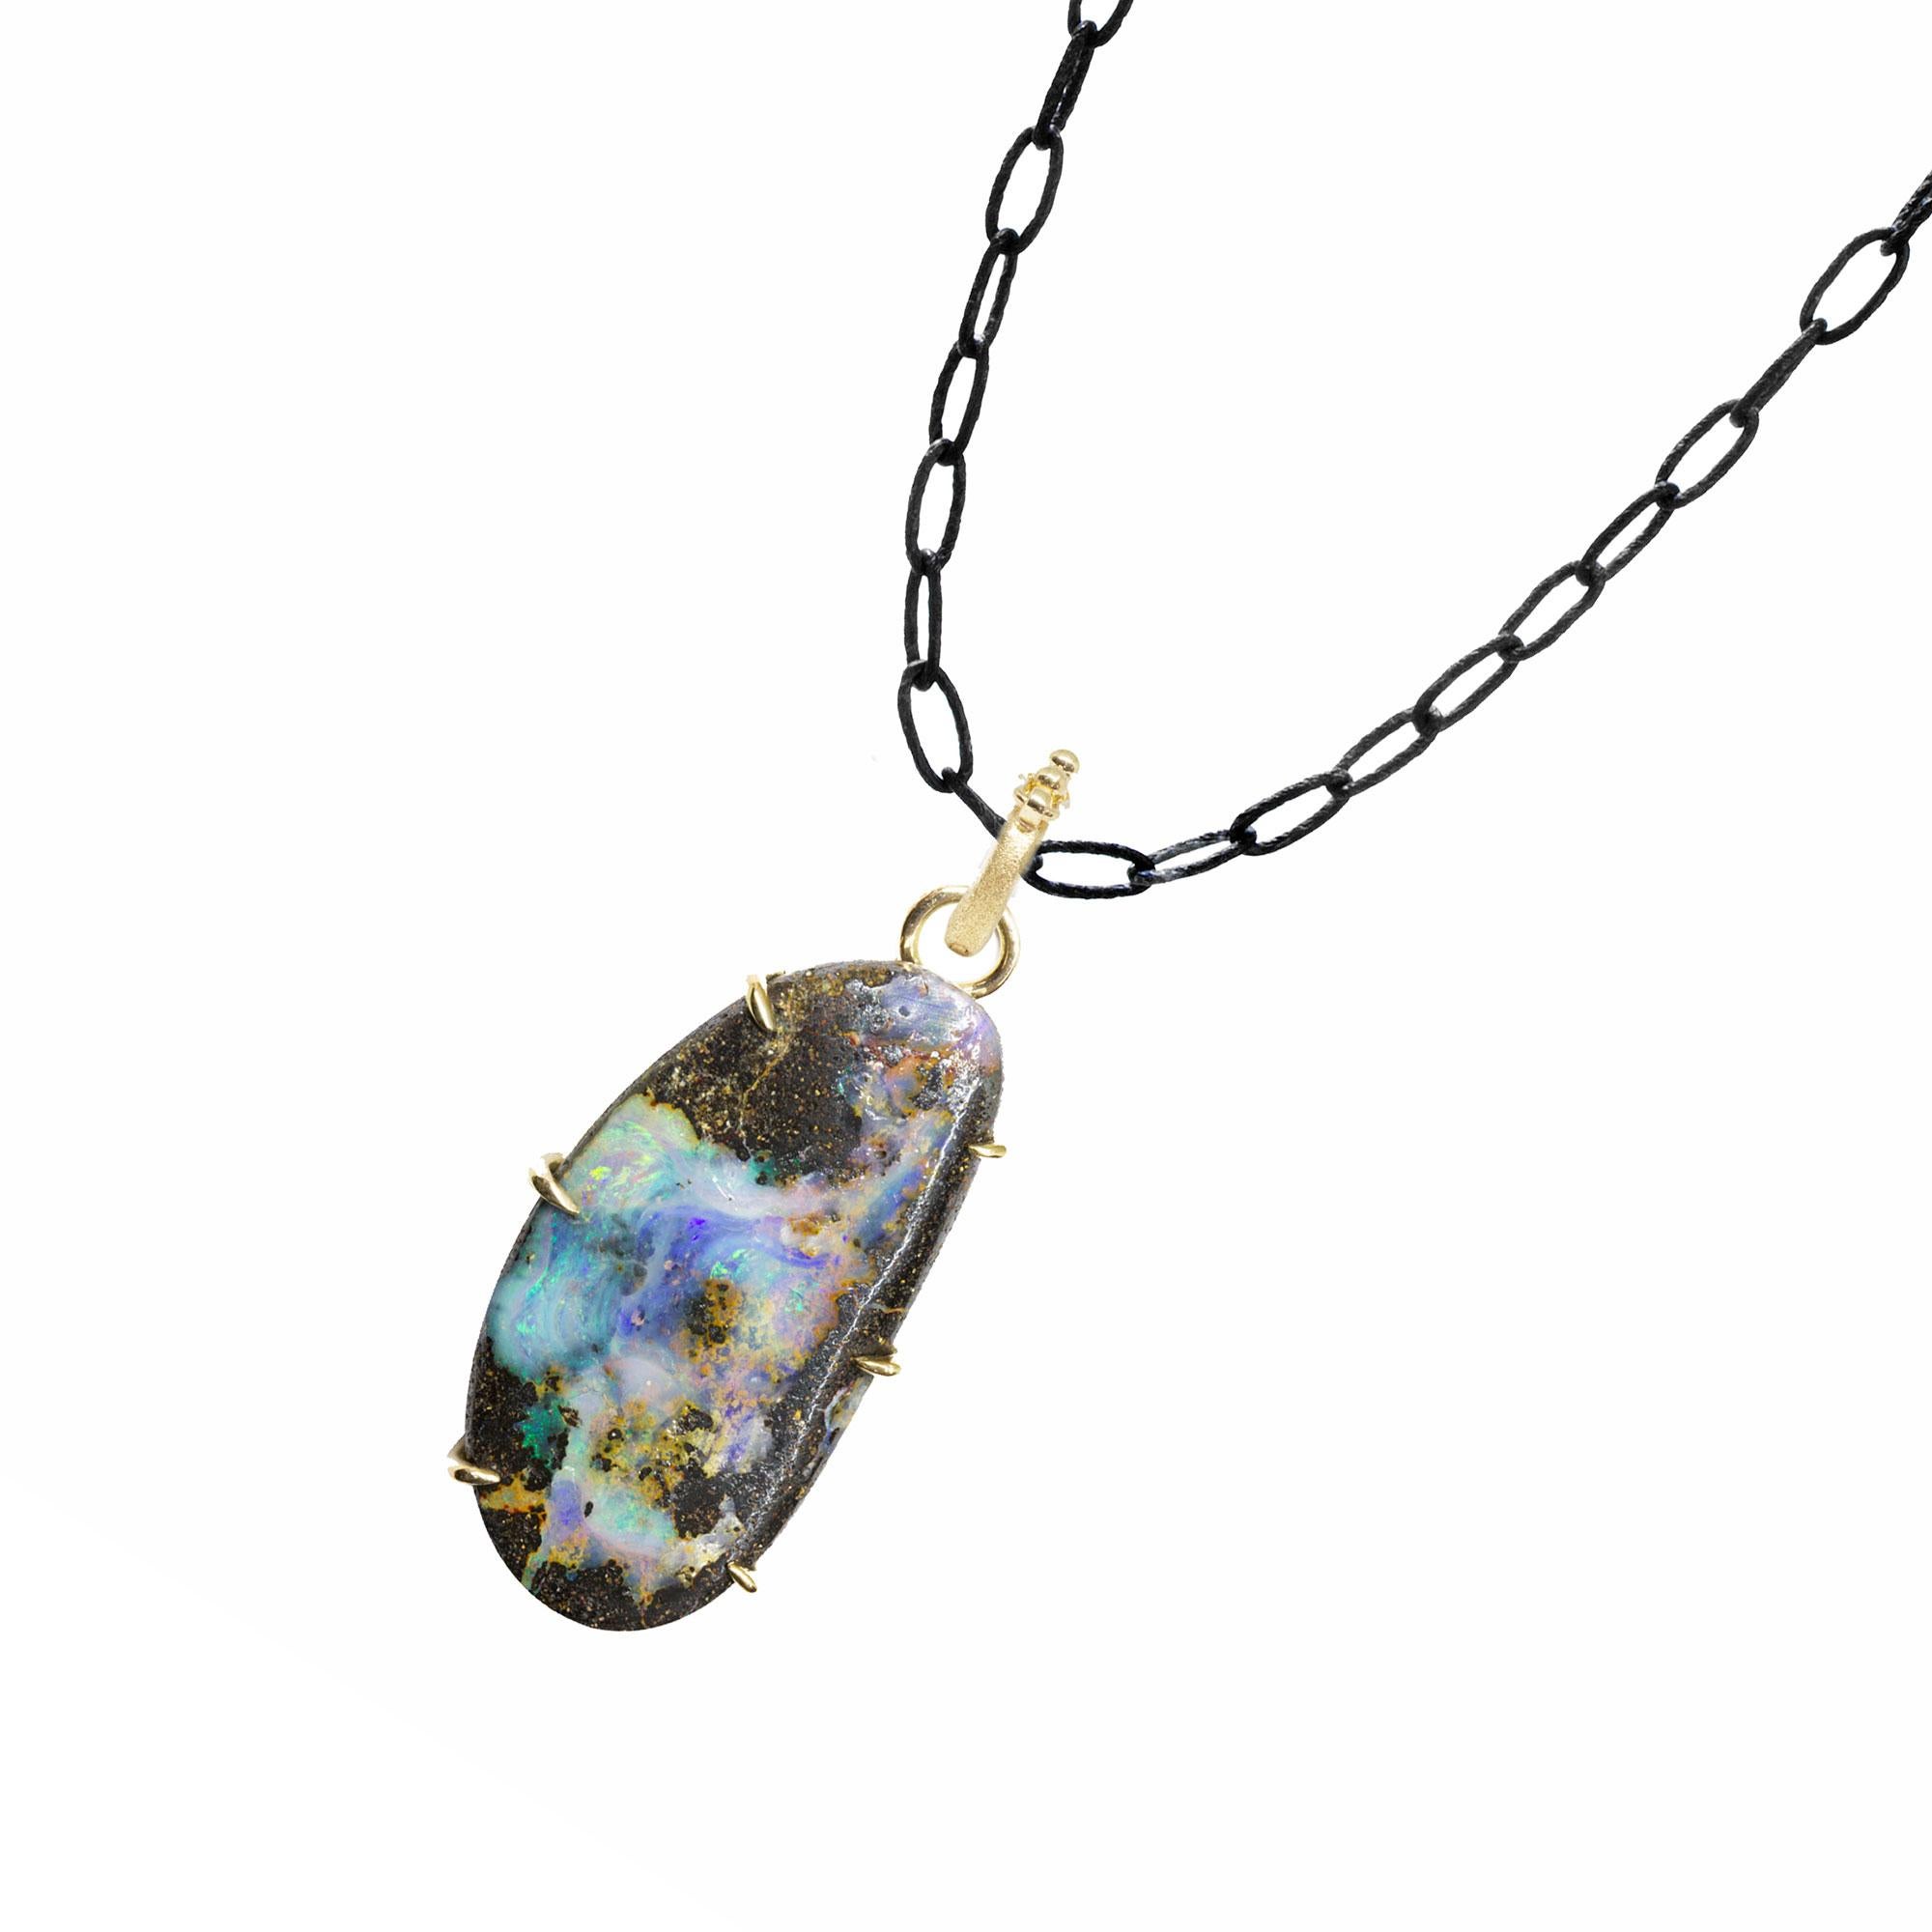 La chaîne noire oxydée en argent sterling est parfaite pour mettre en valeur le pendentif en opale pinnacle. Le collier en argent Pinnacle Medium Boulder Opal est audacieux et brillant, un style magnifique que vous pouvez habiller ou non au